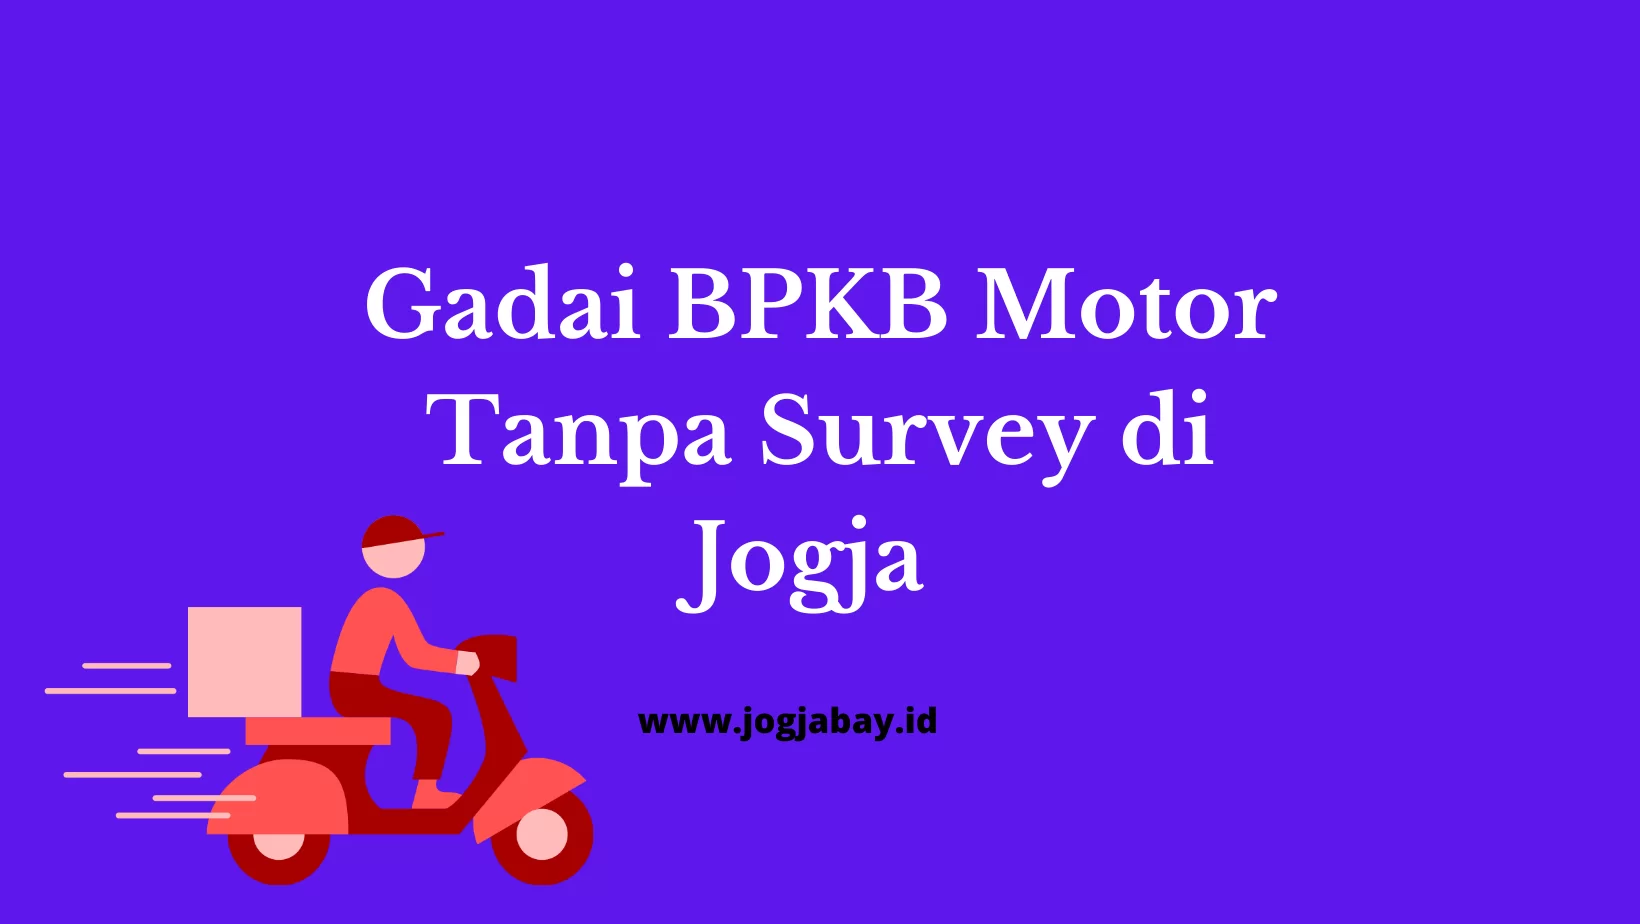 Gadai BPKB Motor Tanpa Survey di Jogja